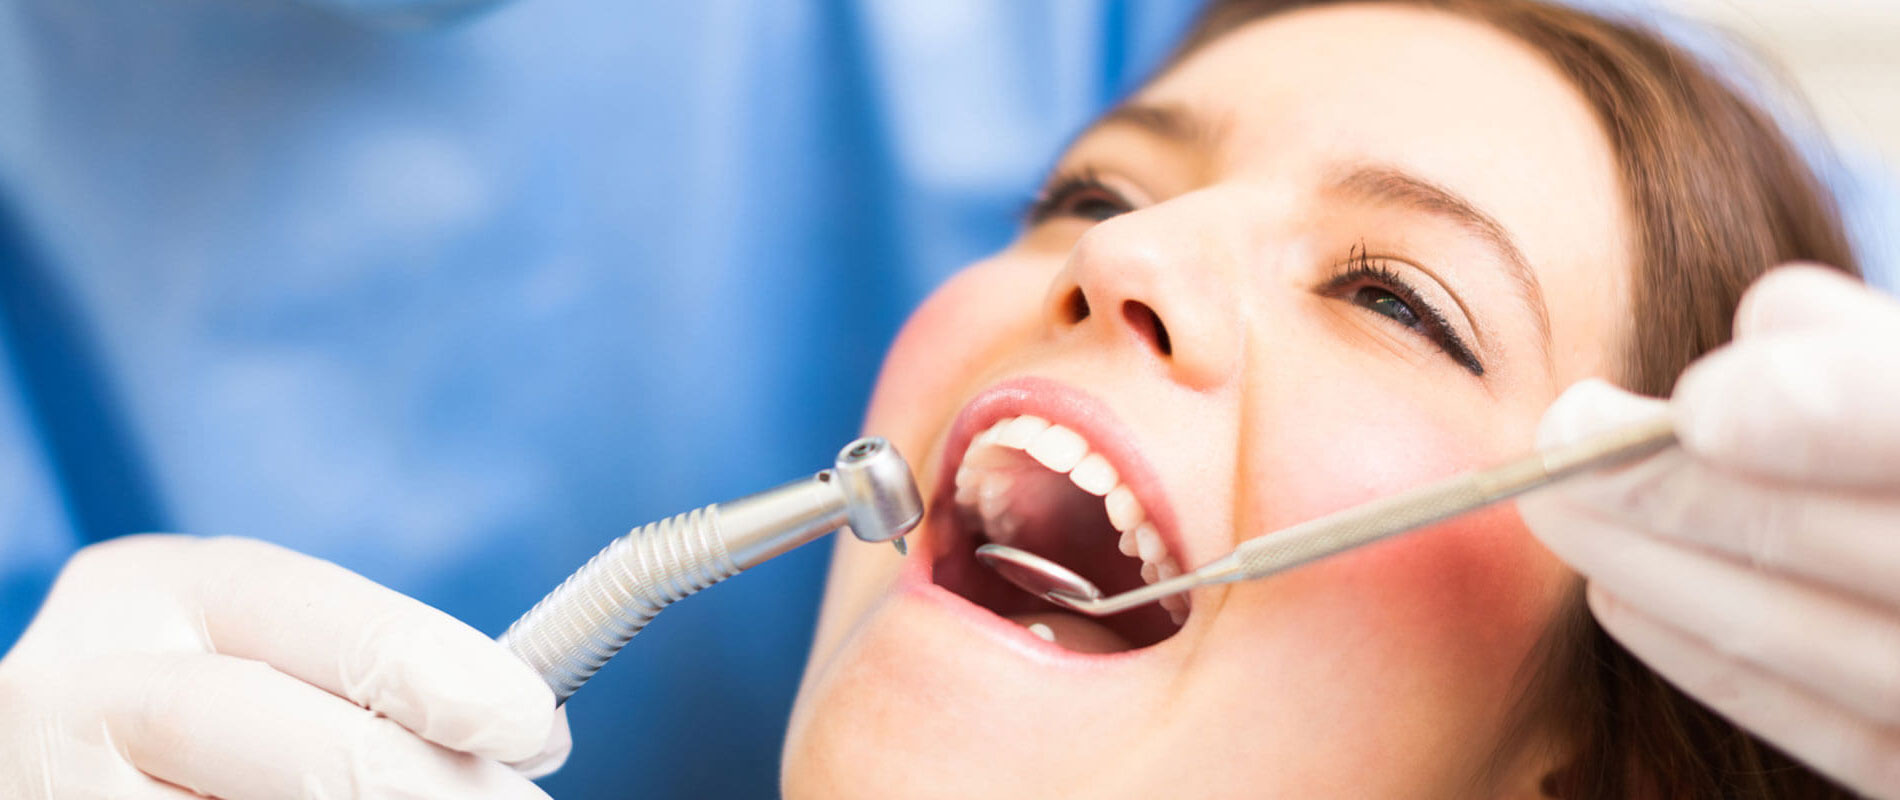 Woman receiving dental work